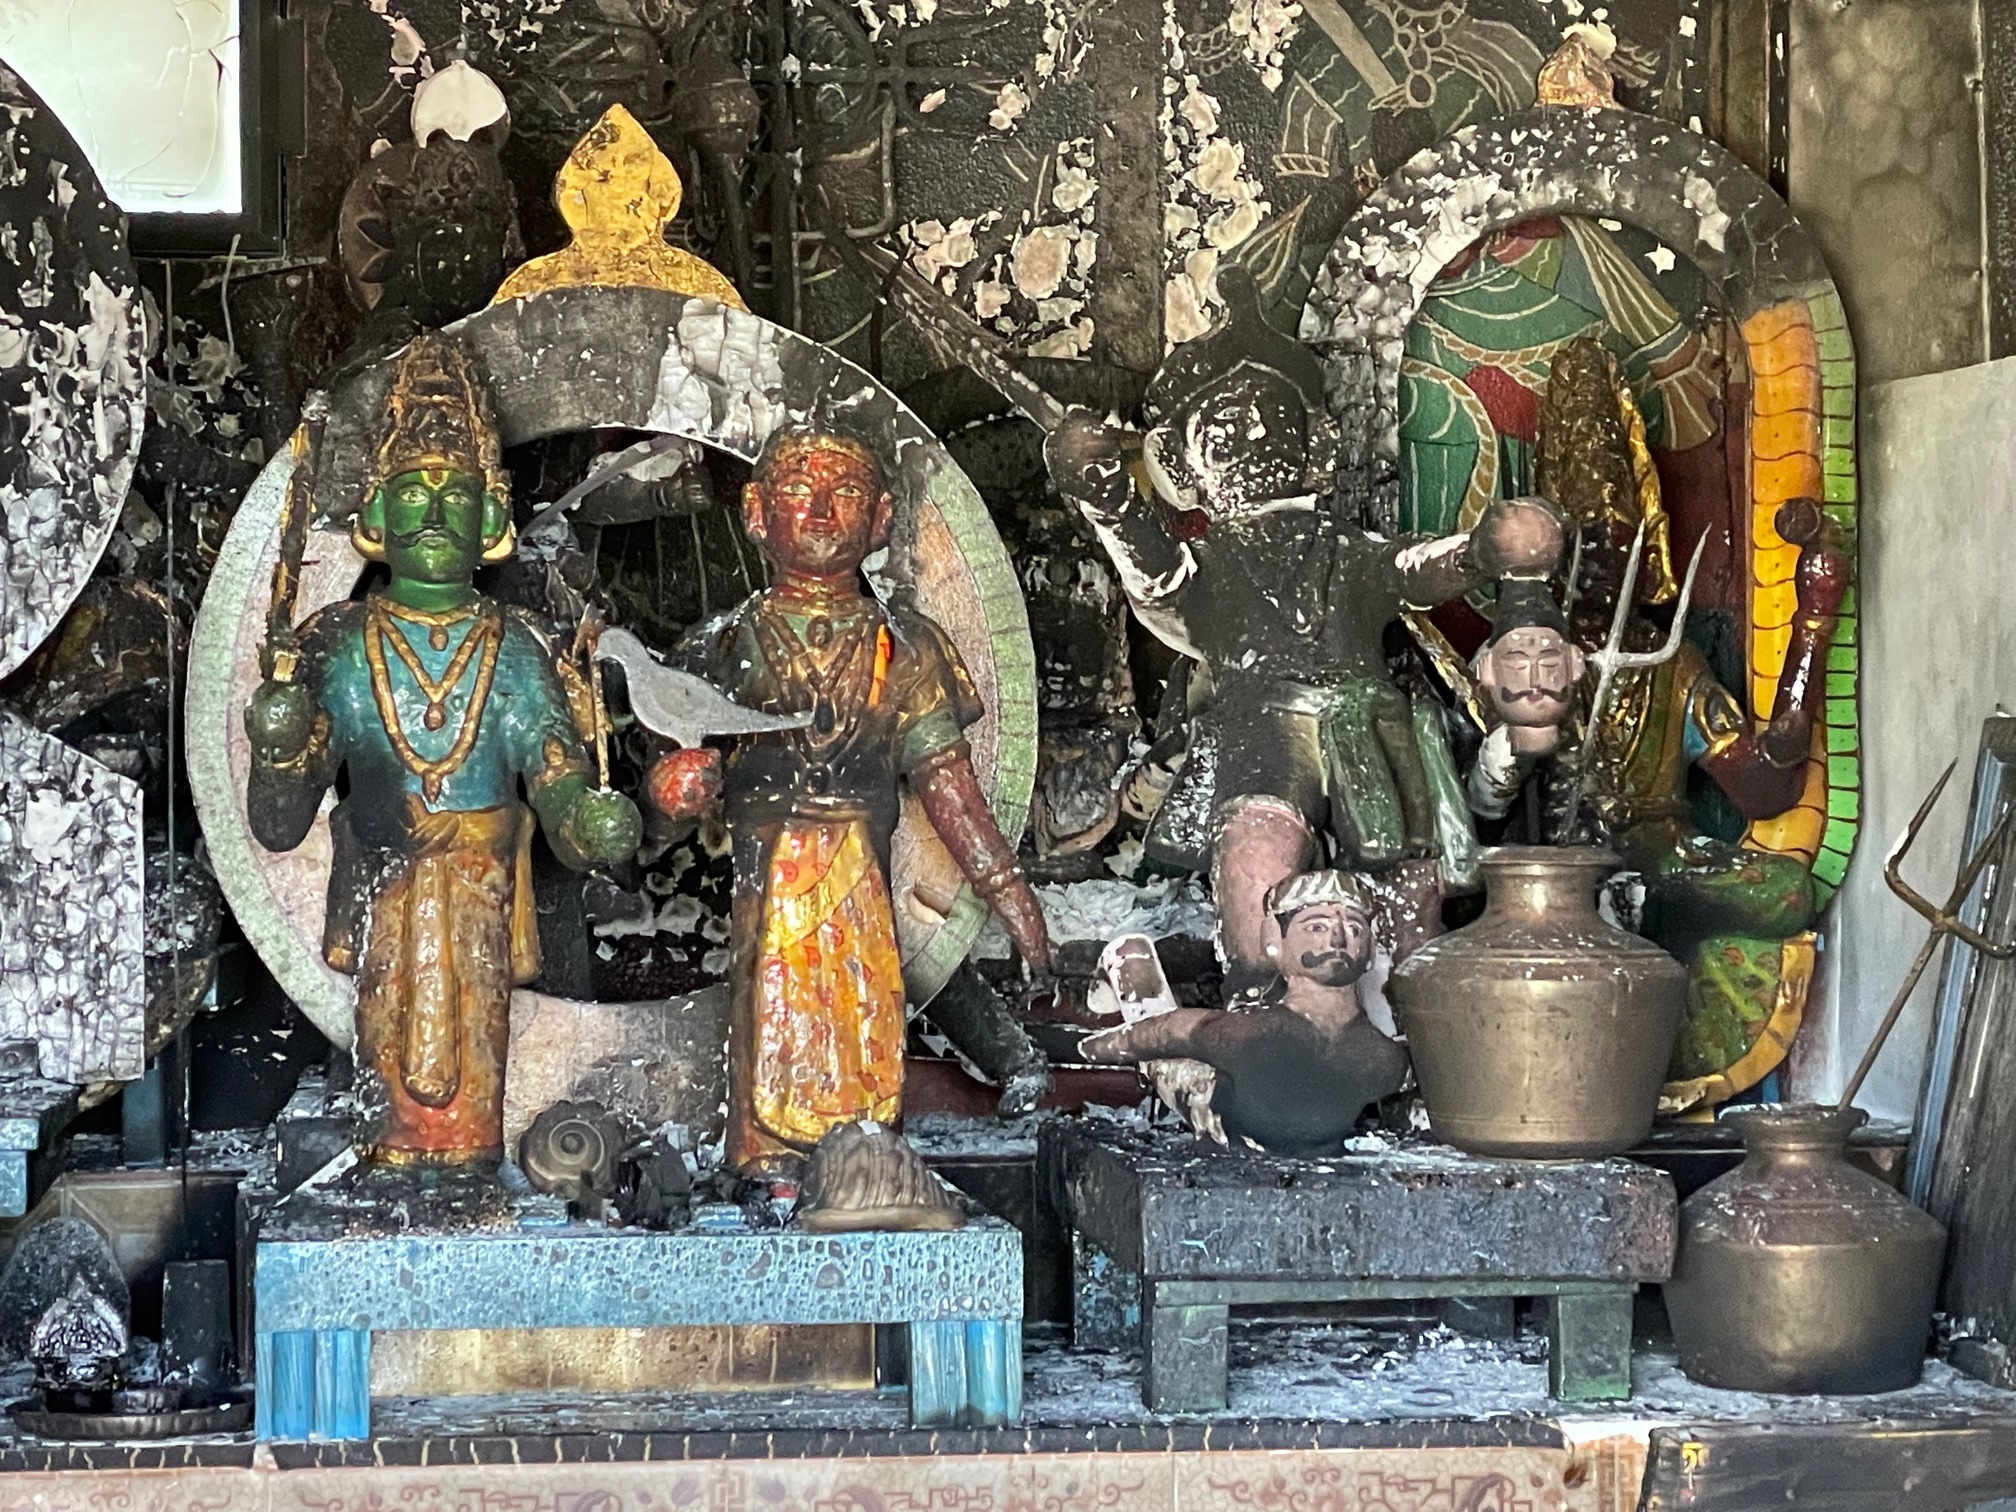 Temple hindou vandalisé : Fin de garde à vue pour le suspect